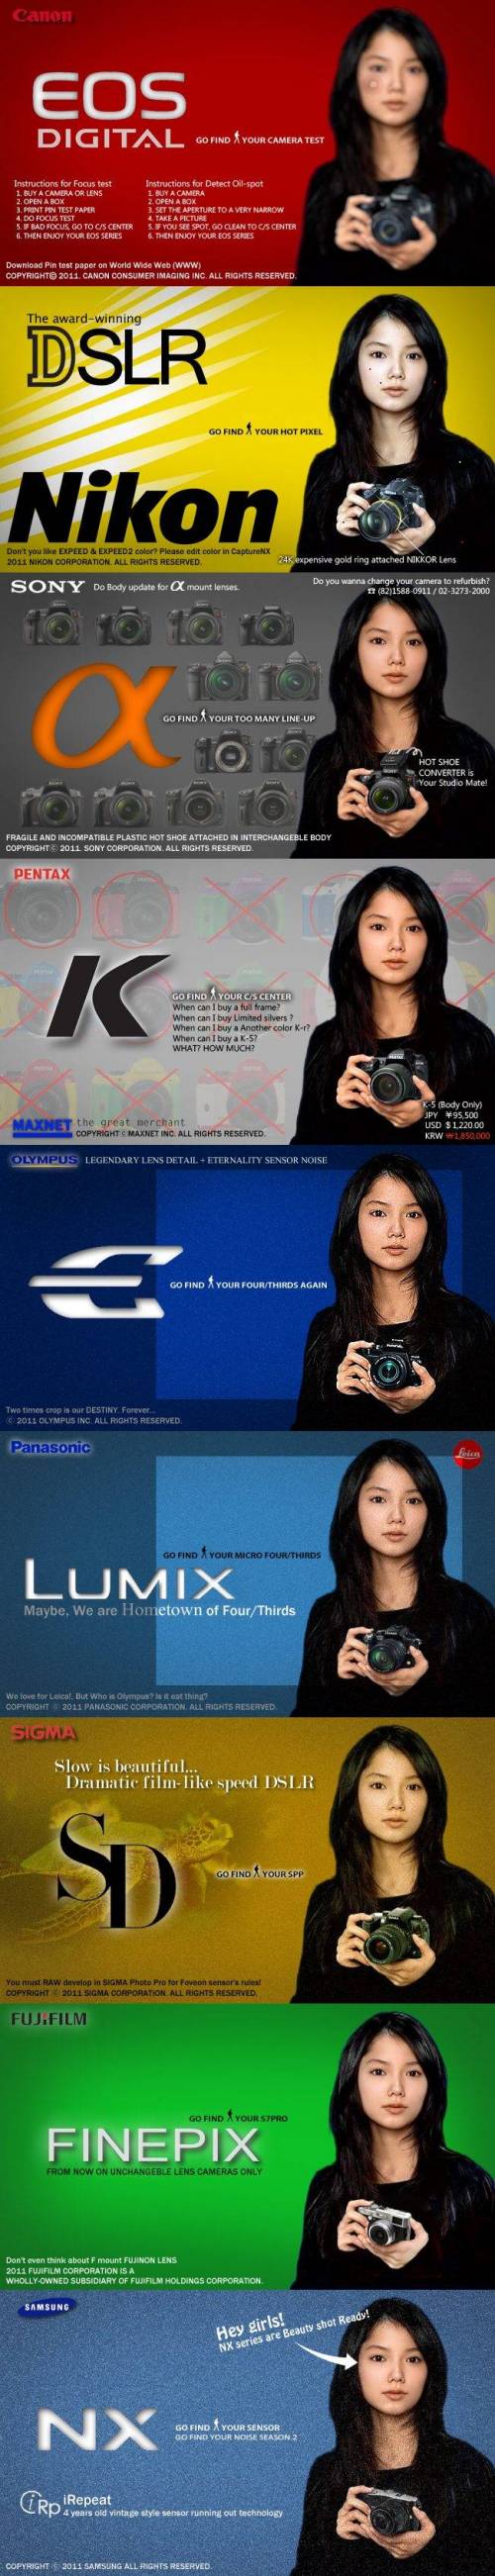 카메라 회사들 특징.jpg